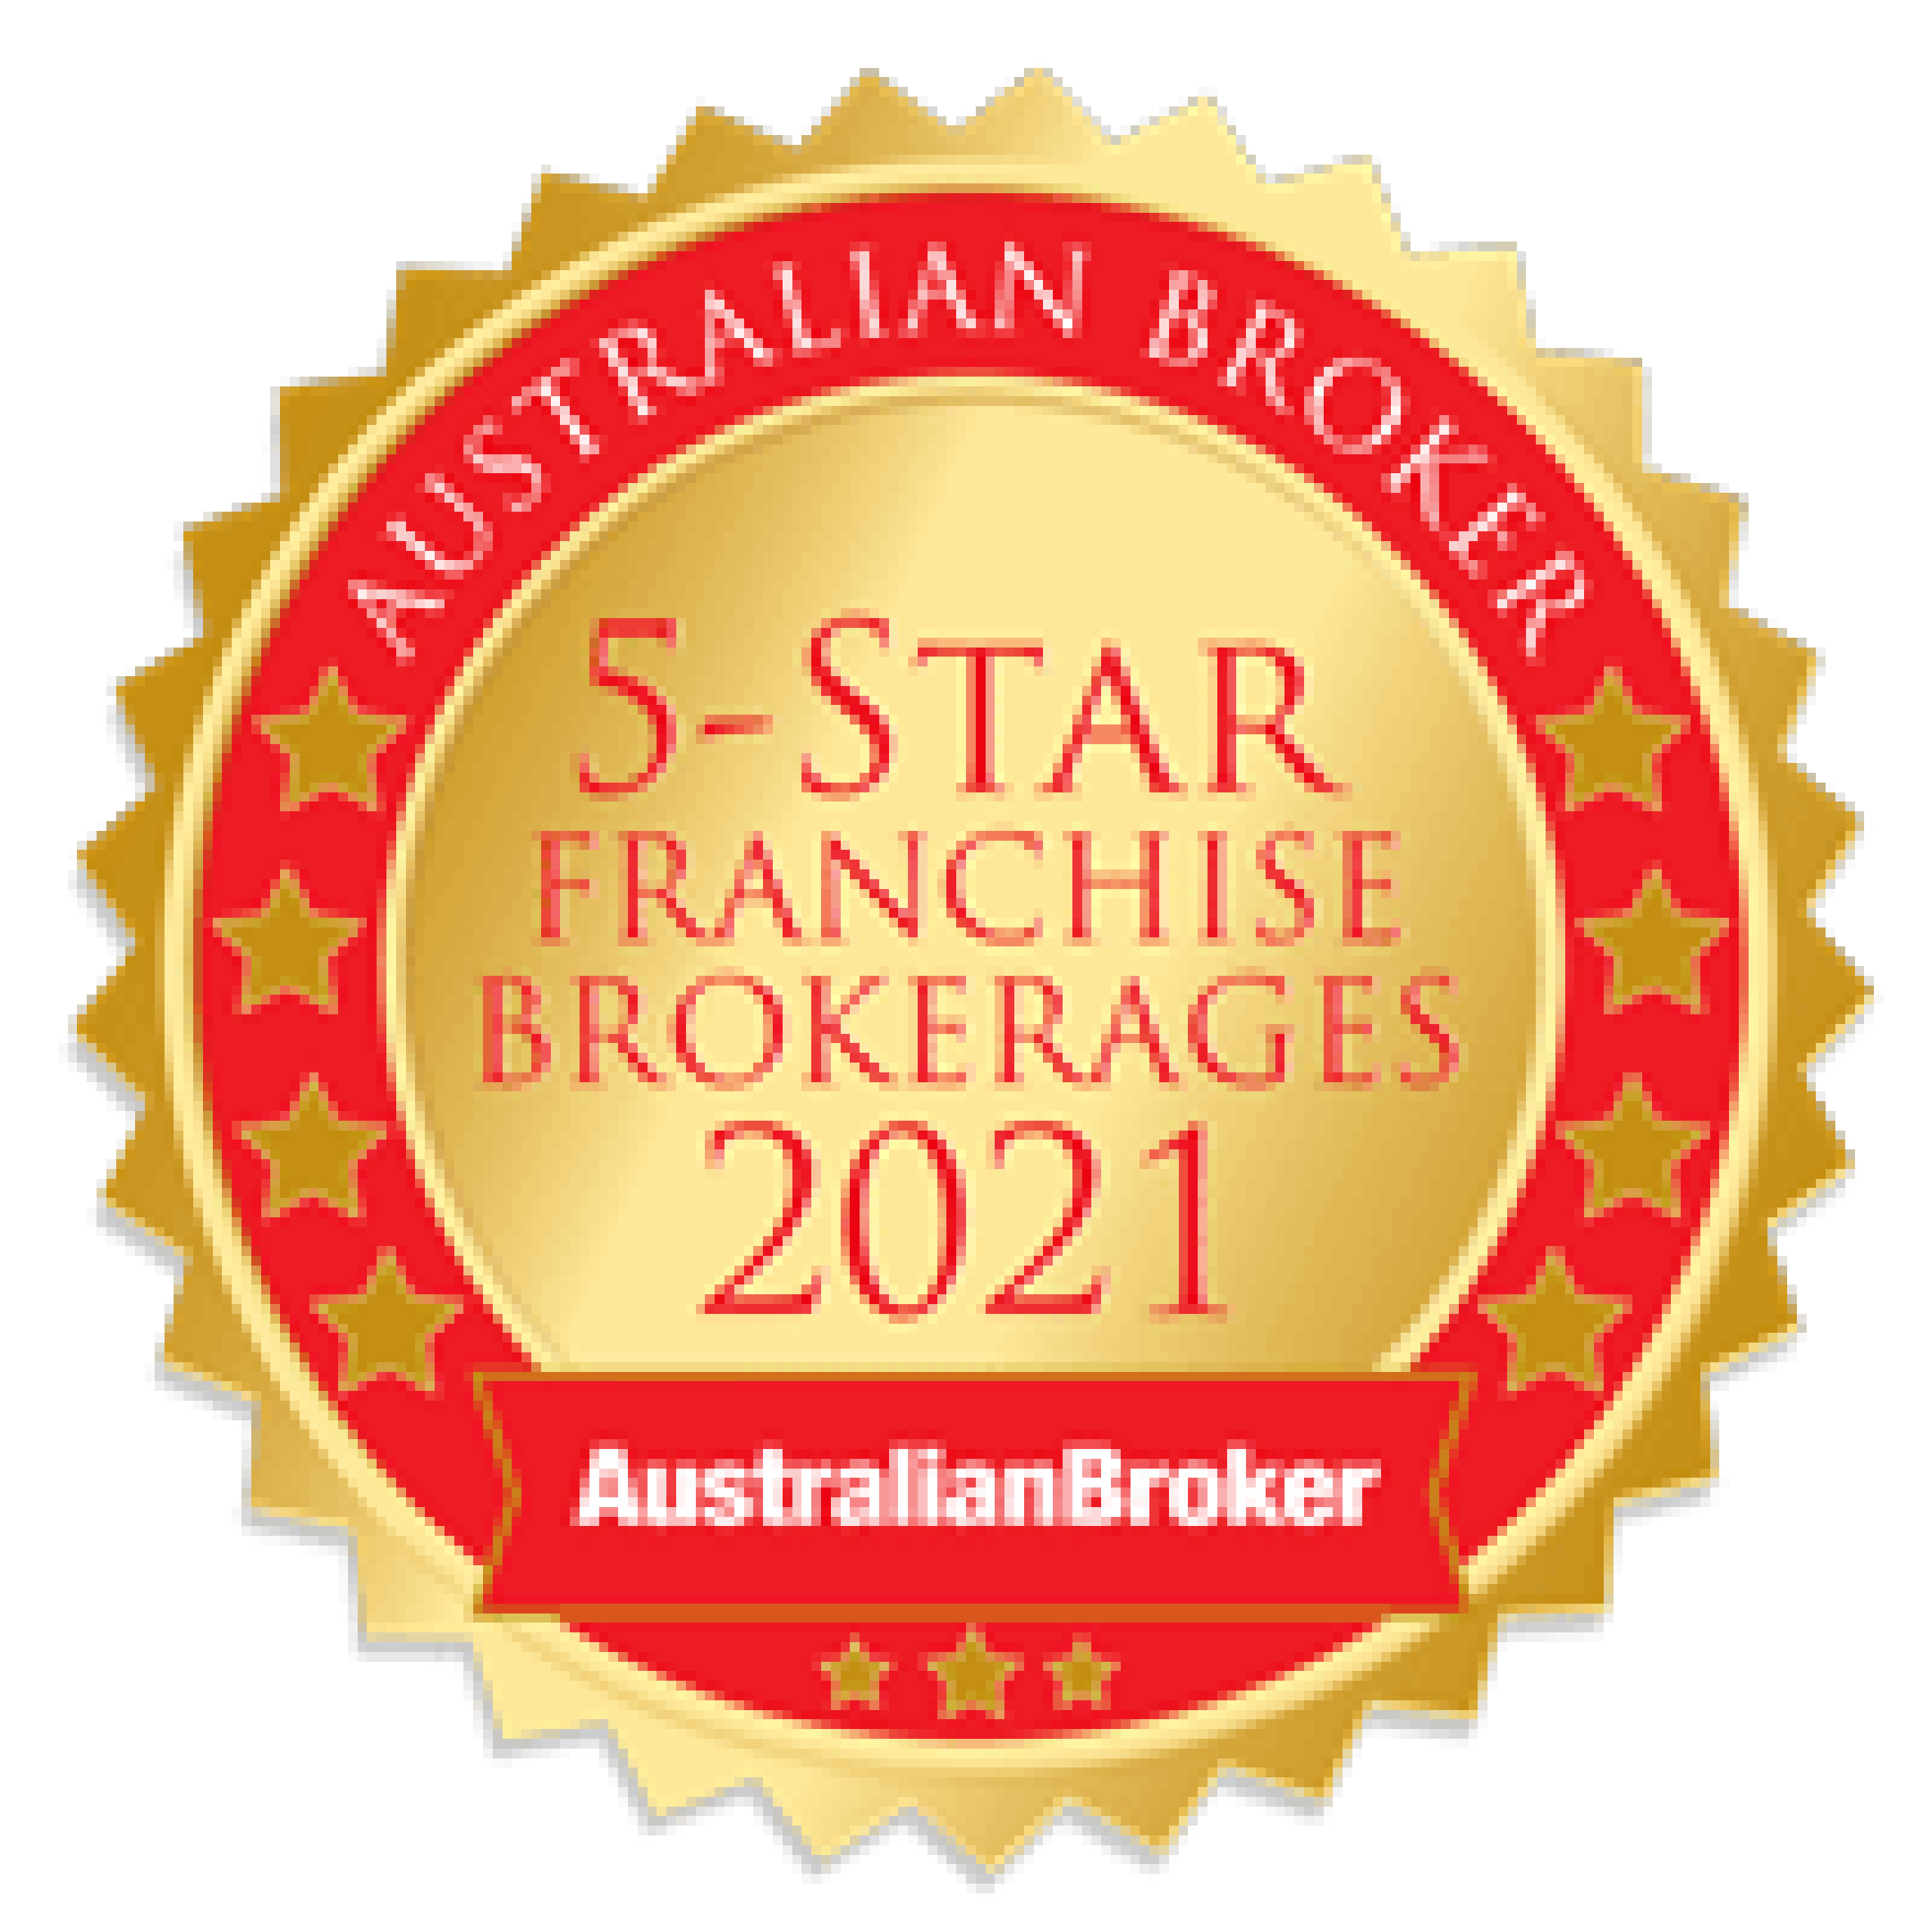  5-start franchise brokerages 2021